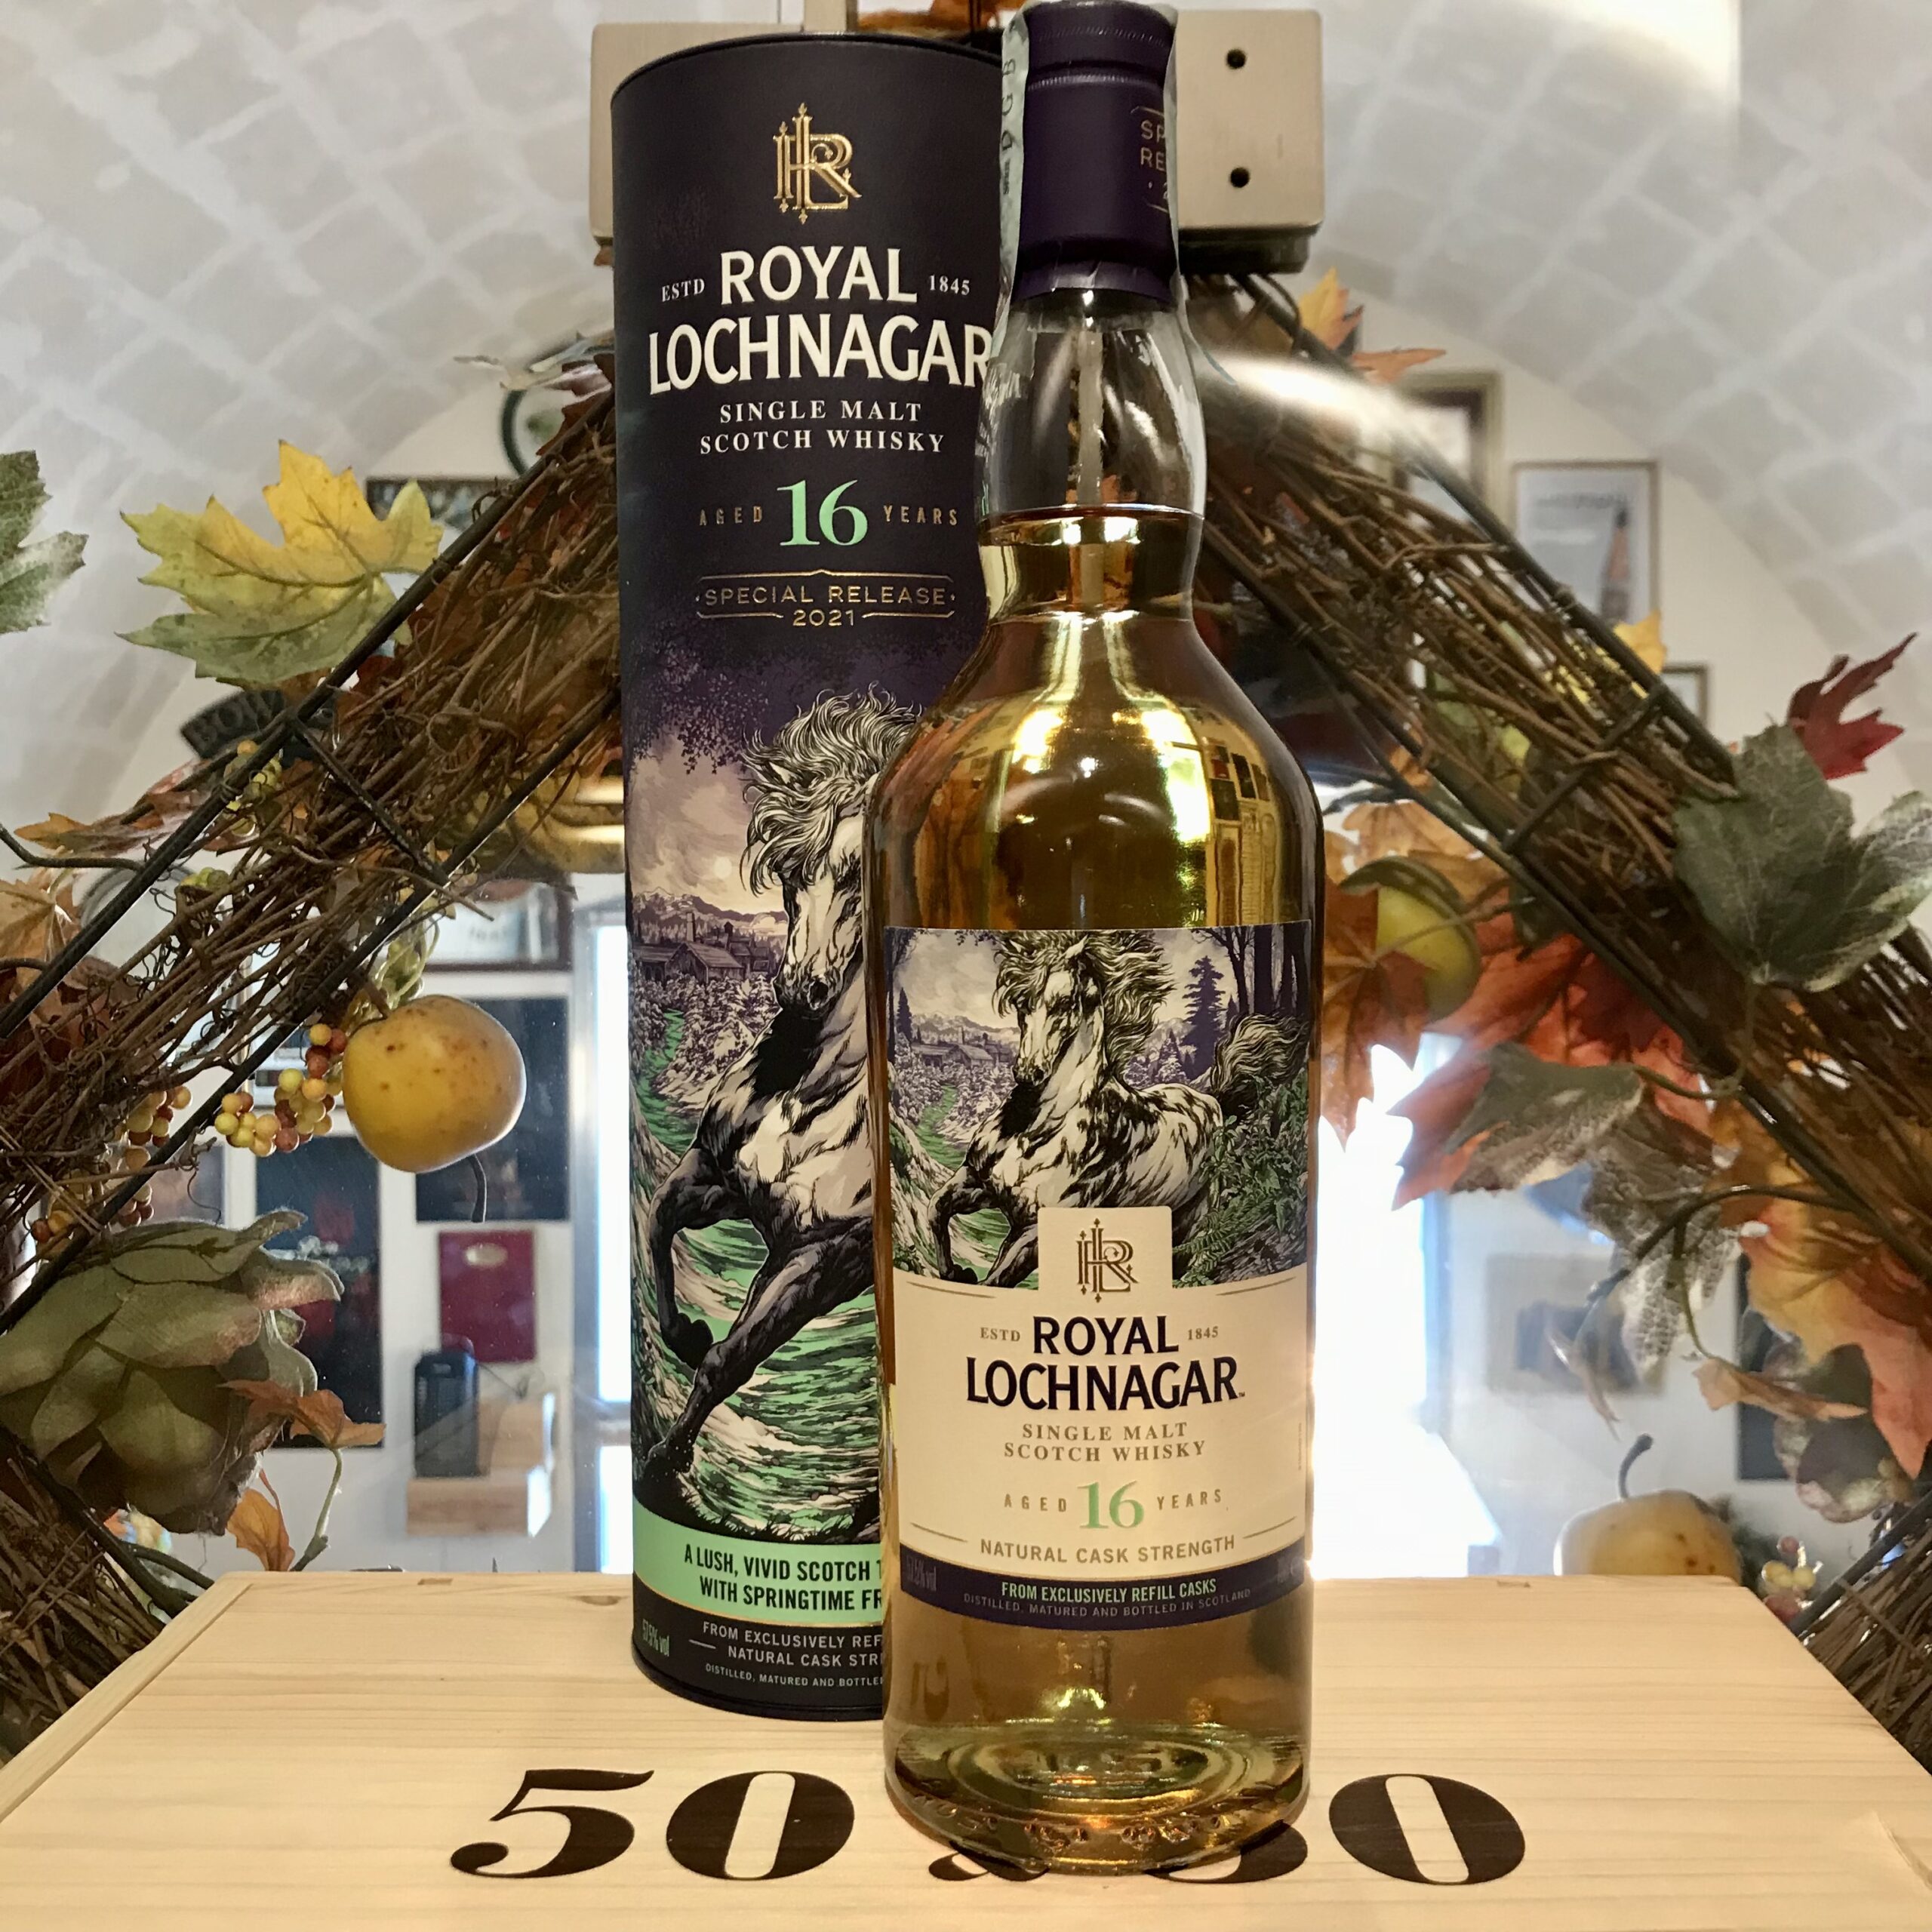 Royal Lochnagar Single Malt Scotch Whisky 16 YO Special Release 2021